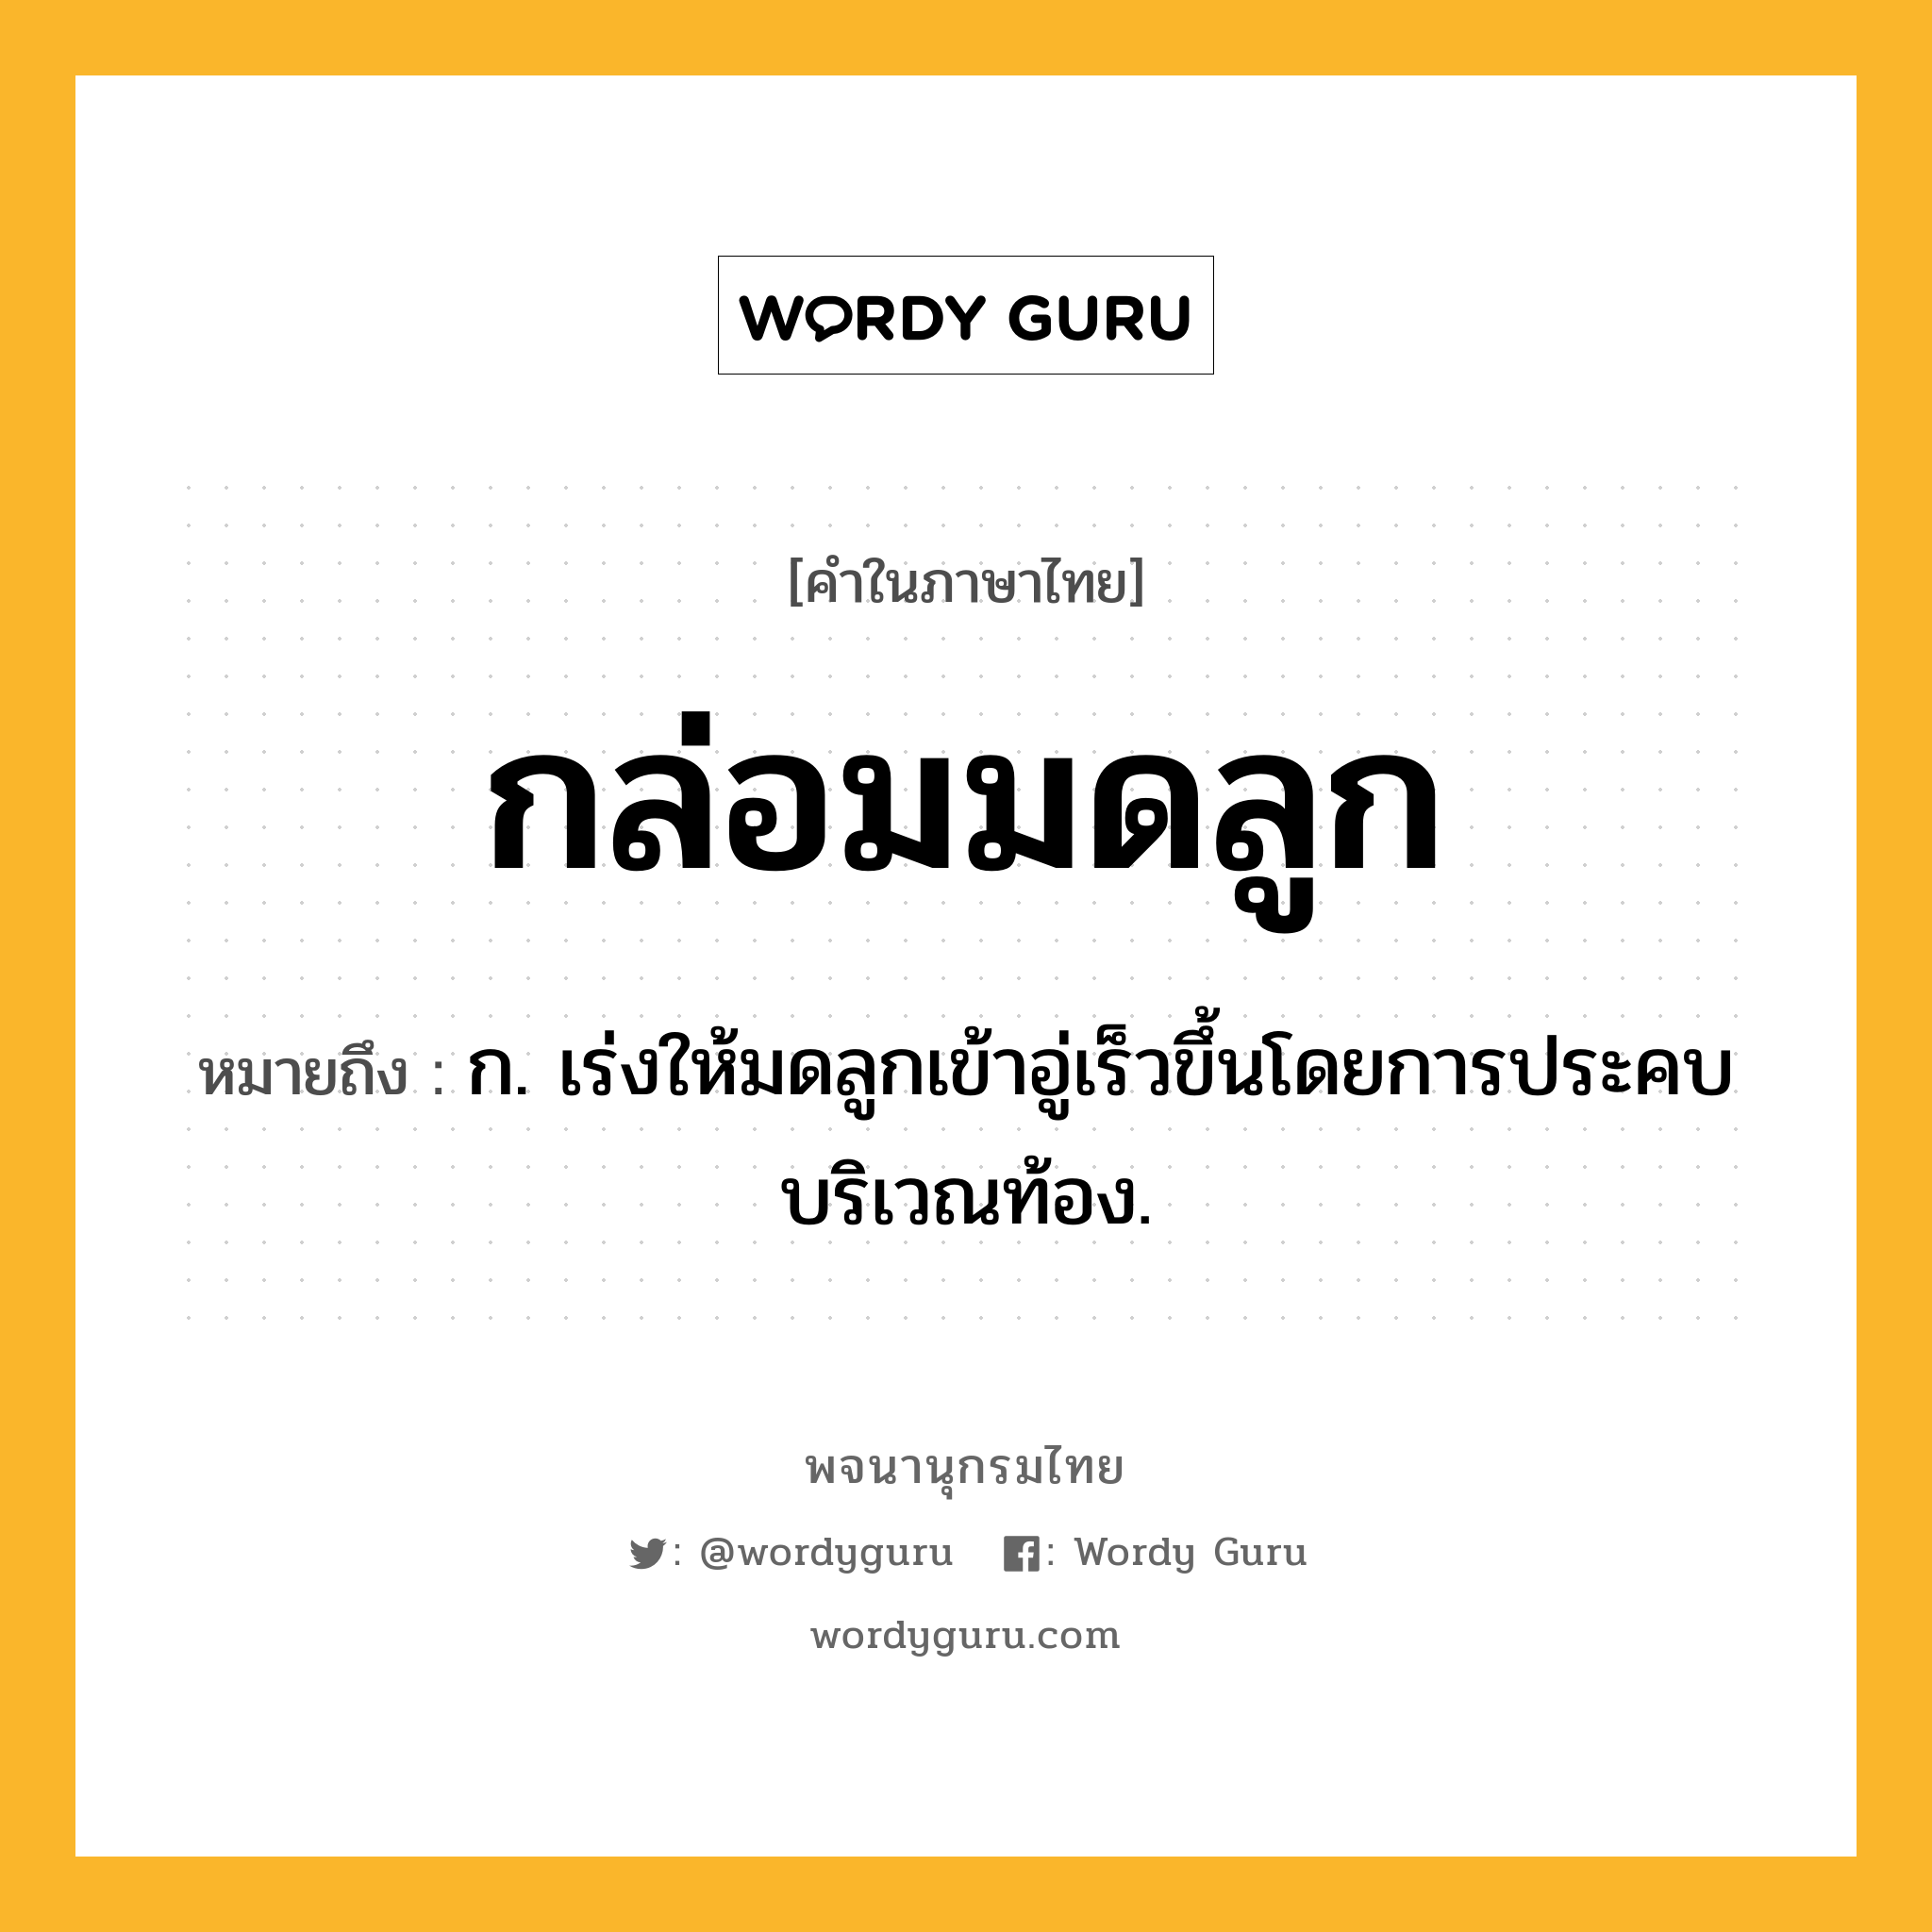 กล่อมมดลูก ความหมาย หมายถึงอะไร?, คำในภาษาไทย กล่อมมดลูก หมายถึง ก. เร่งให้มดลูกเข้าอู่เร็วขึ้นโดยการประคบบริเวณท้อง.